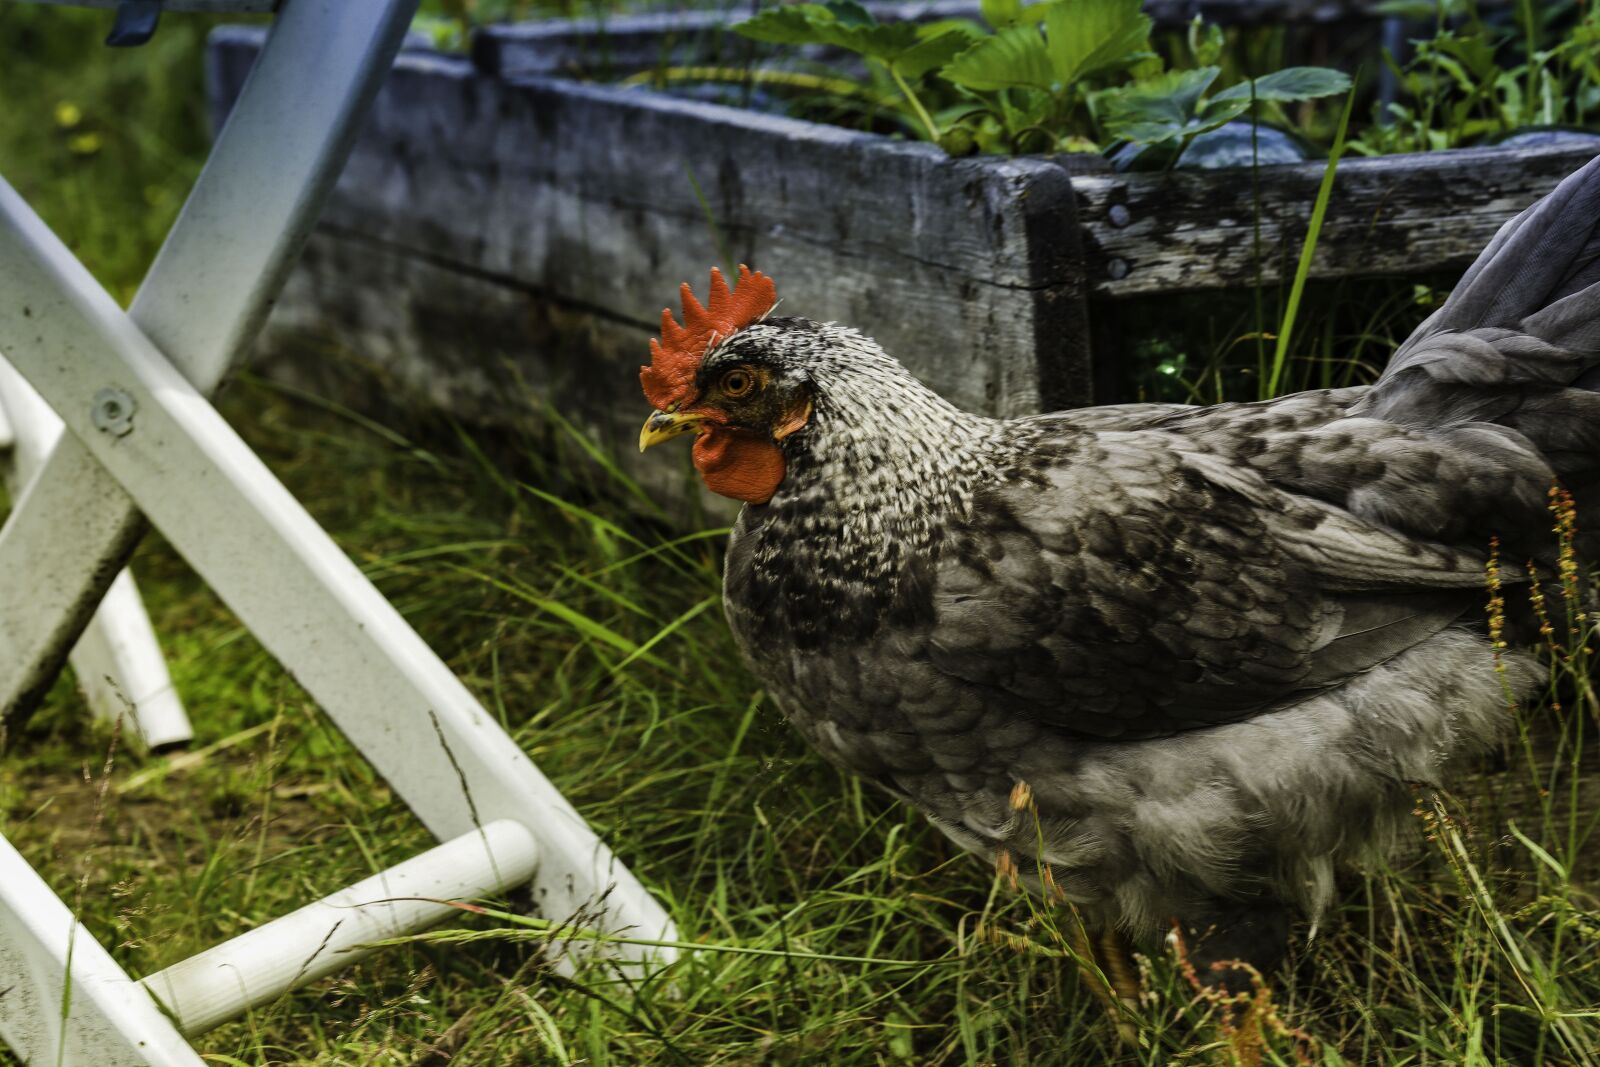 Canon EOS R sample photo. Hen, chicken, animal photography